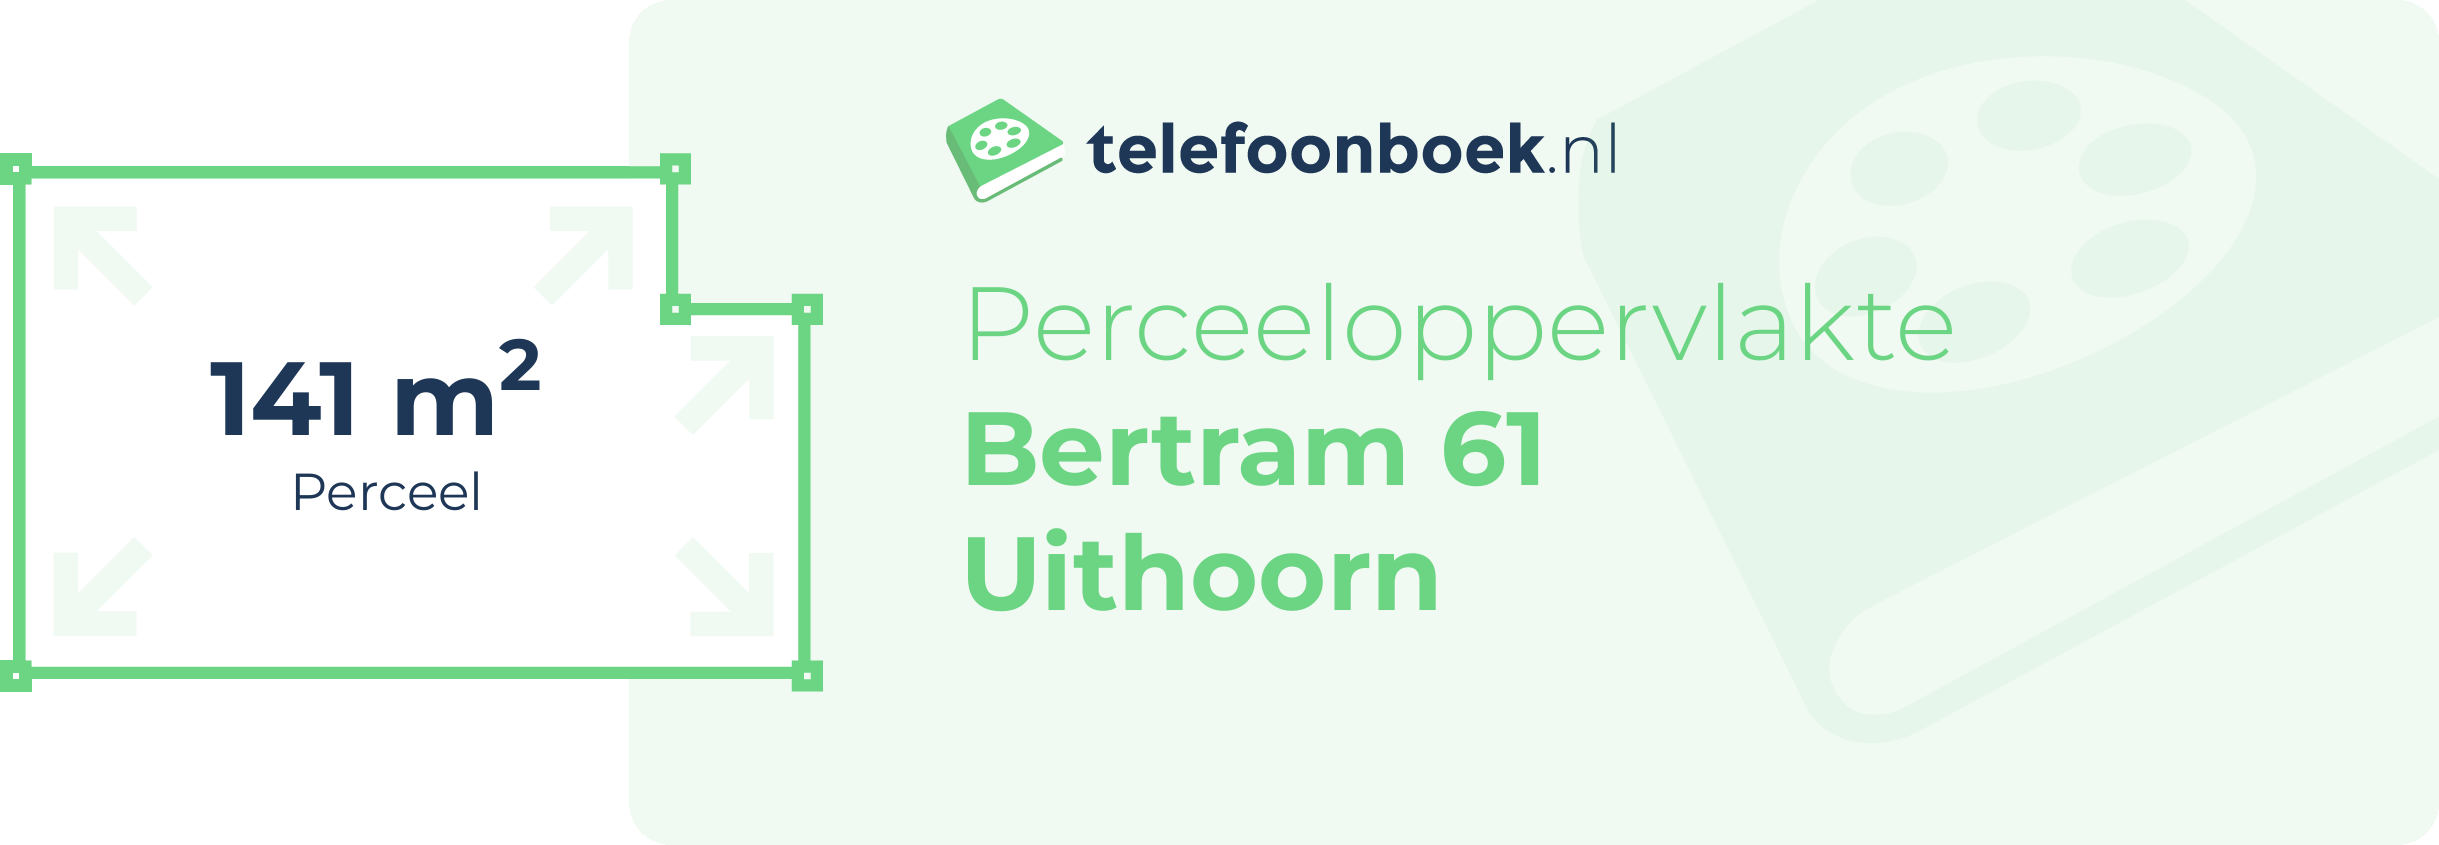 Perceeloppervlakte Bertram 61 Uithoorn